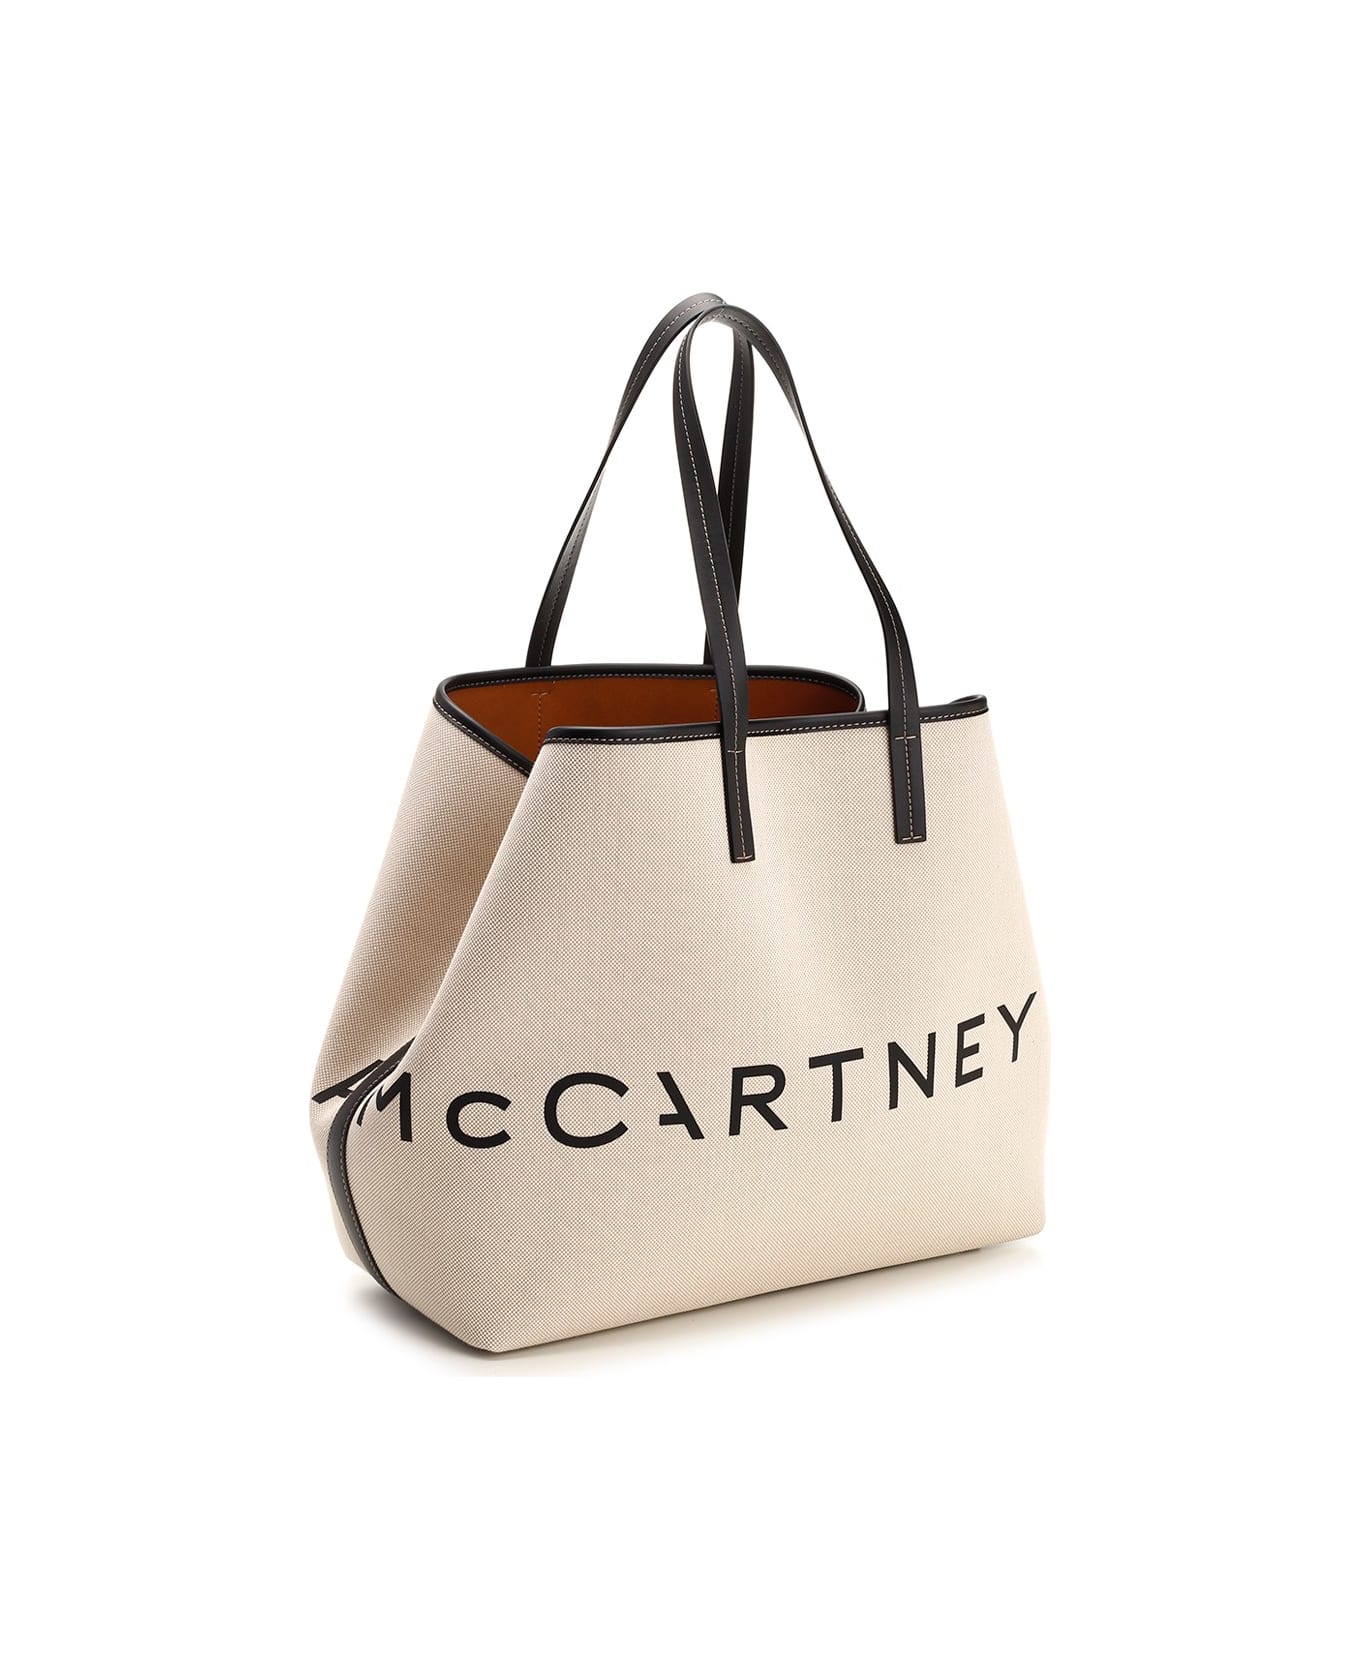 Stella McCartney Canvas Tote Bag - Ecru